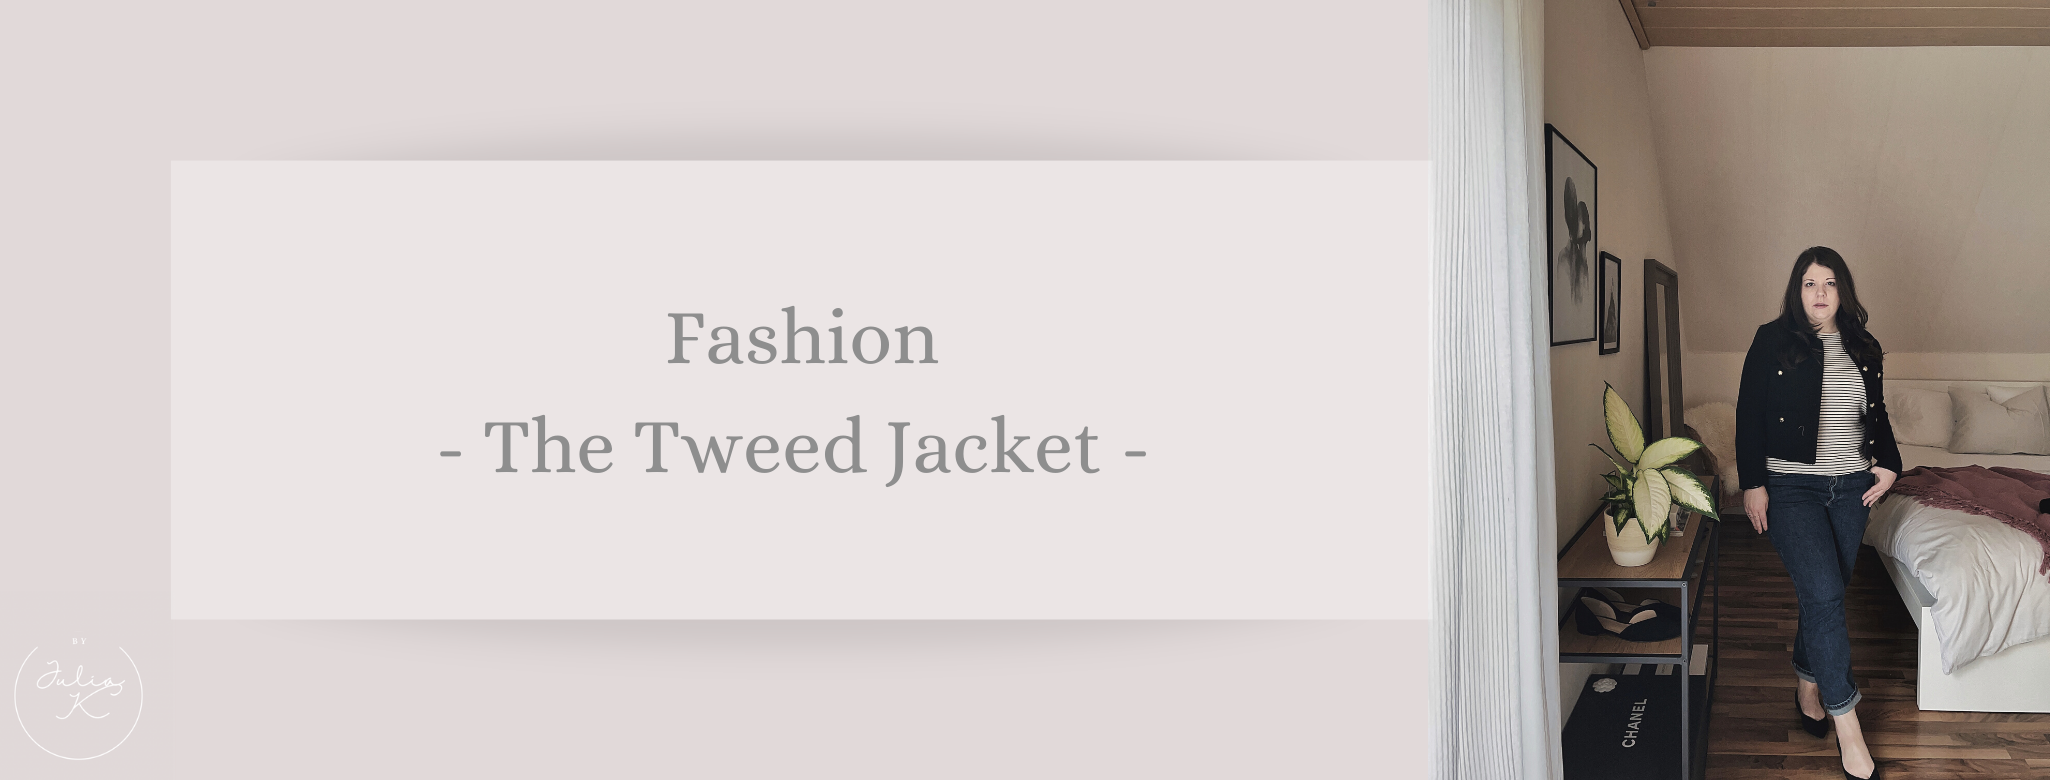 Fashion: The iconic tweed jacket